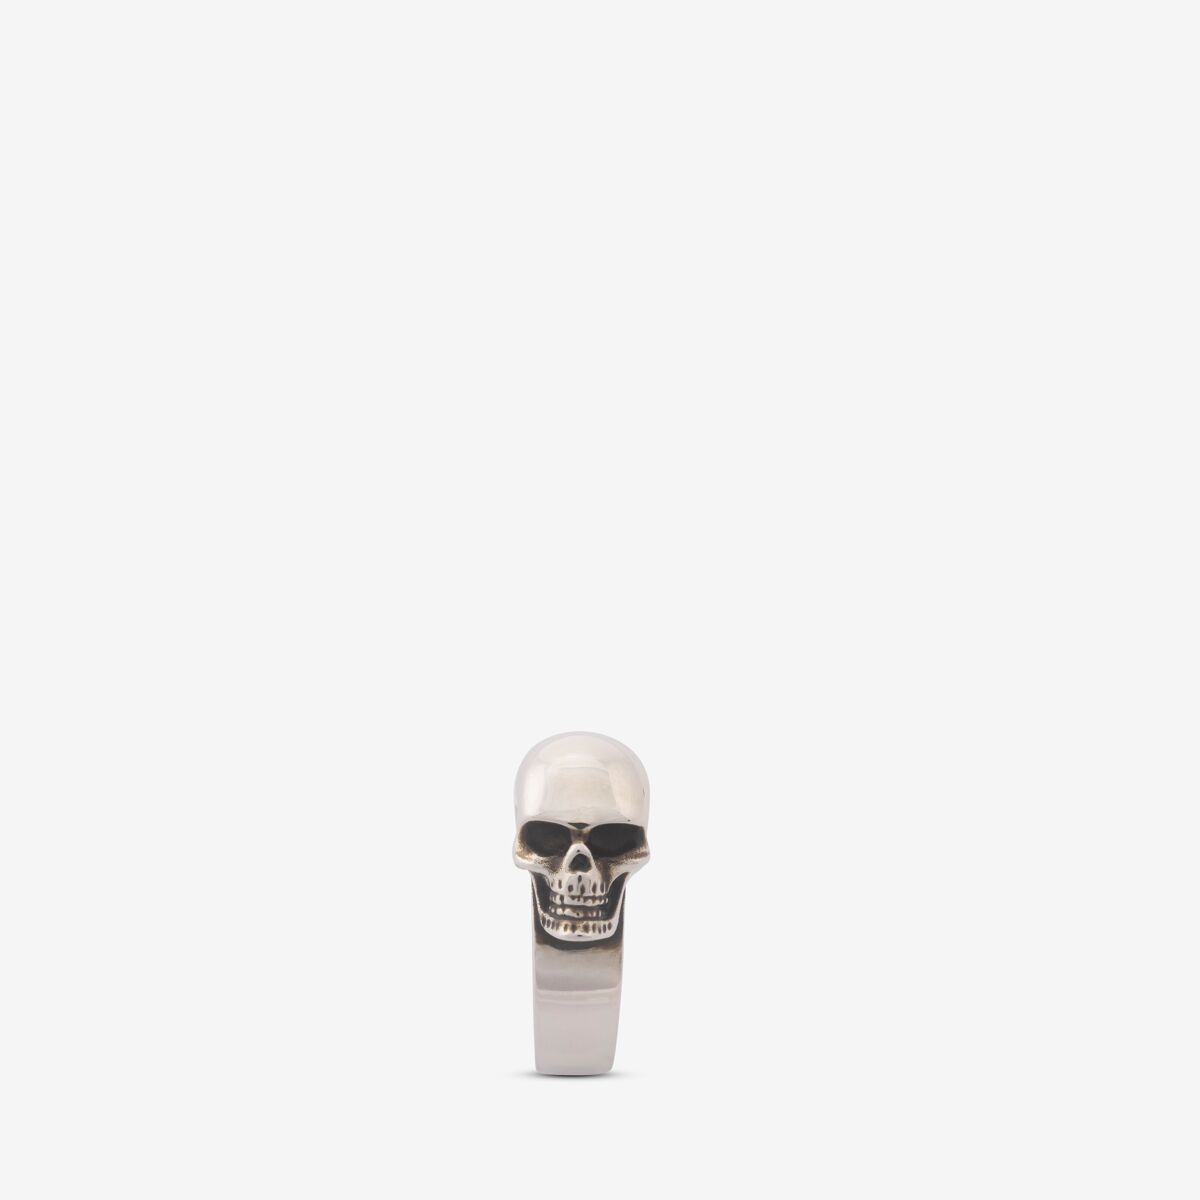 ALEXANDER MCQUEEN - The Side Skull Ring - Item 748202J160Y0446